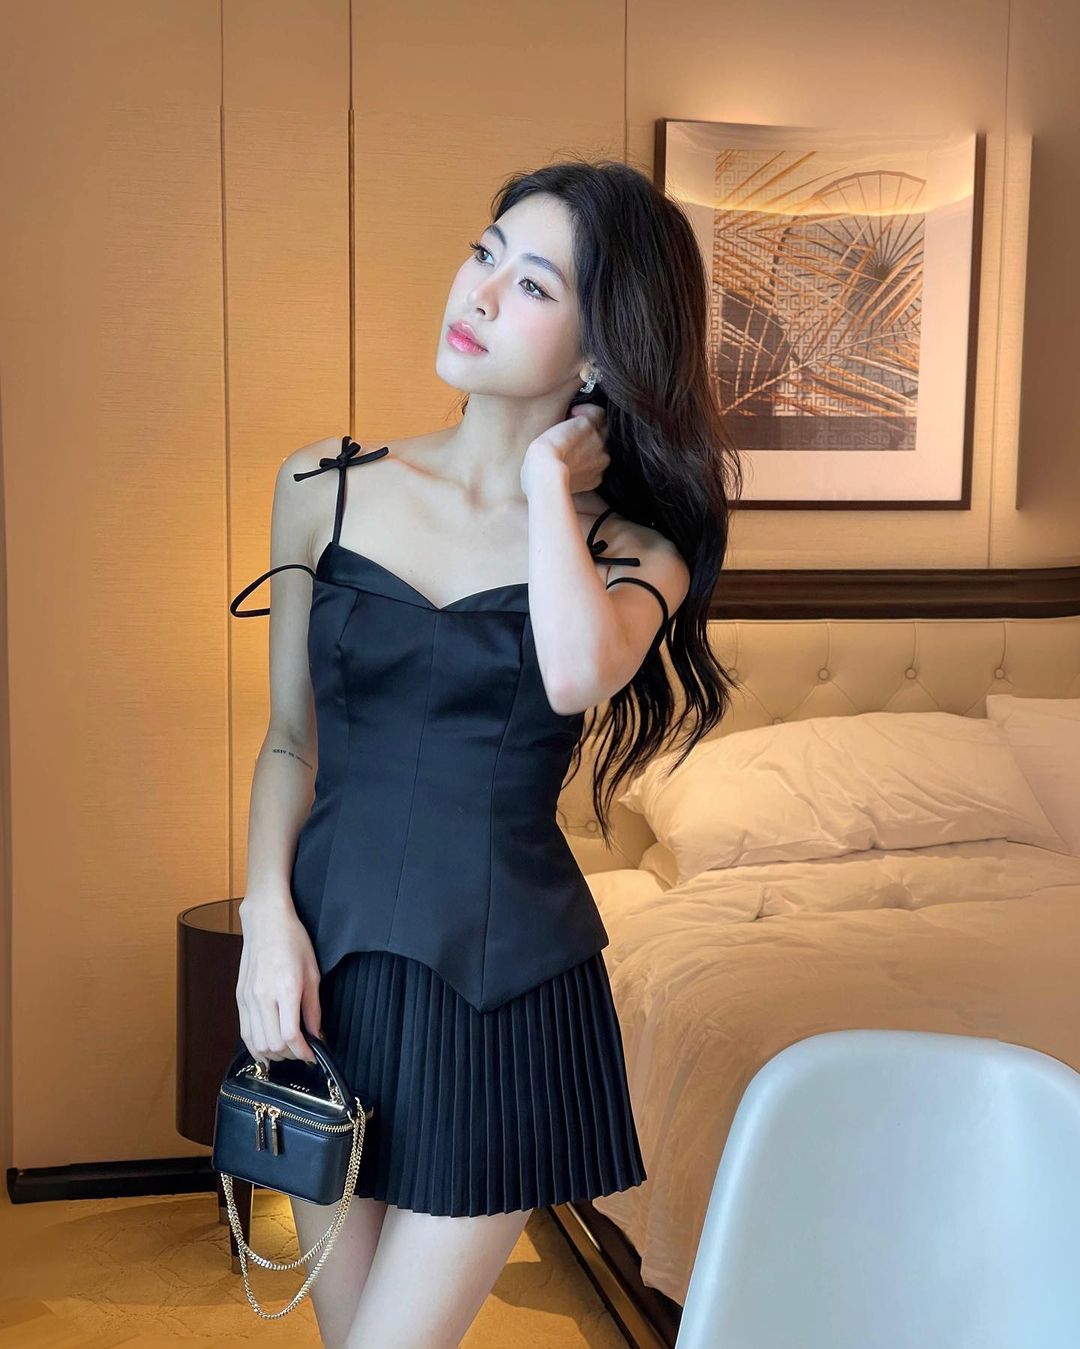 一位身穿優雅黑色鬱金香迷你裙套裝🌹、拎著小錢包的年輕女子在時尚的飯店房間裡擺姿勢。